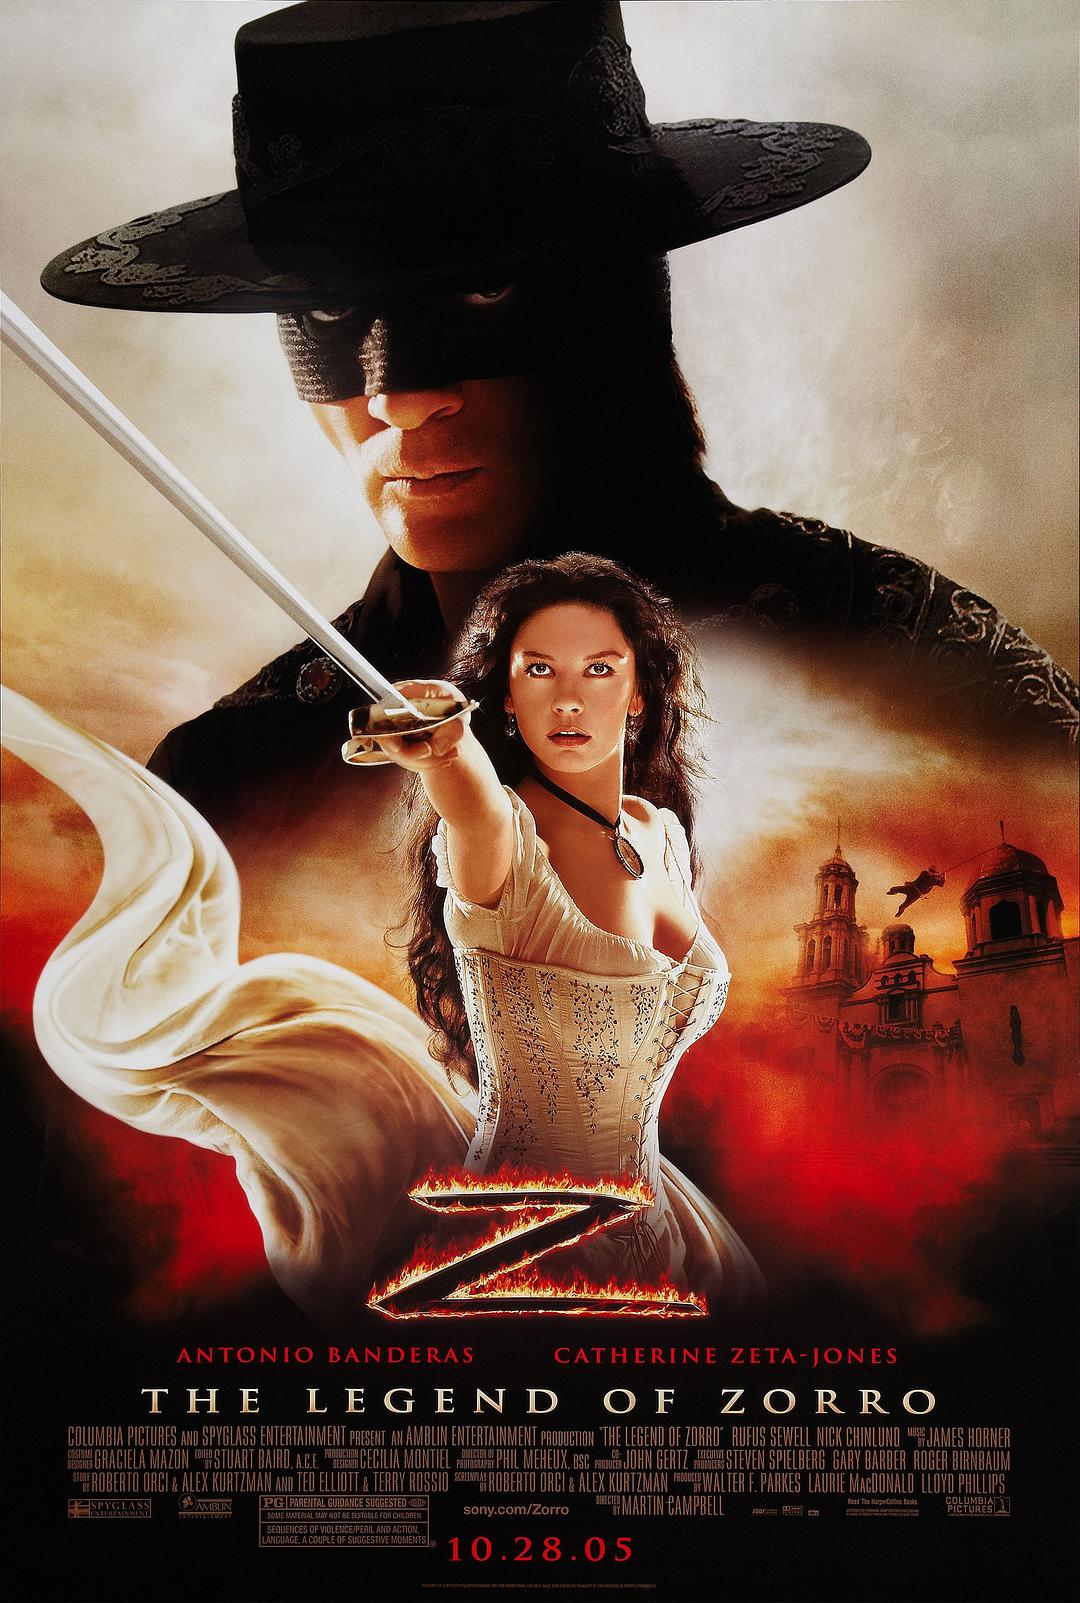 佐罗传奇/蒙面侠苏洛2：不朽传奇/黑侠梭罗Z传奇 [国配/国配简体/R3繁体/简英双语字幕/导评中字].The.Legend.of.Zorro.2005.TW.Blu-ray.1080P.AVC.TrueHD-TAG 42.94GB-1.jpg